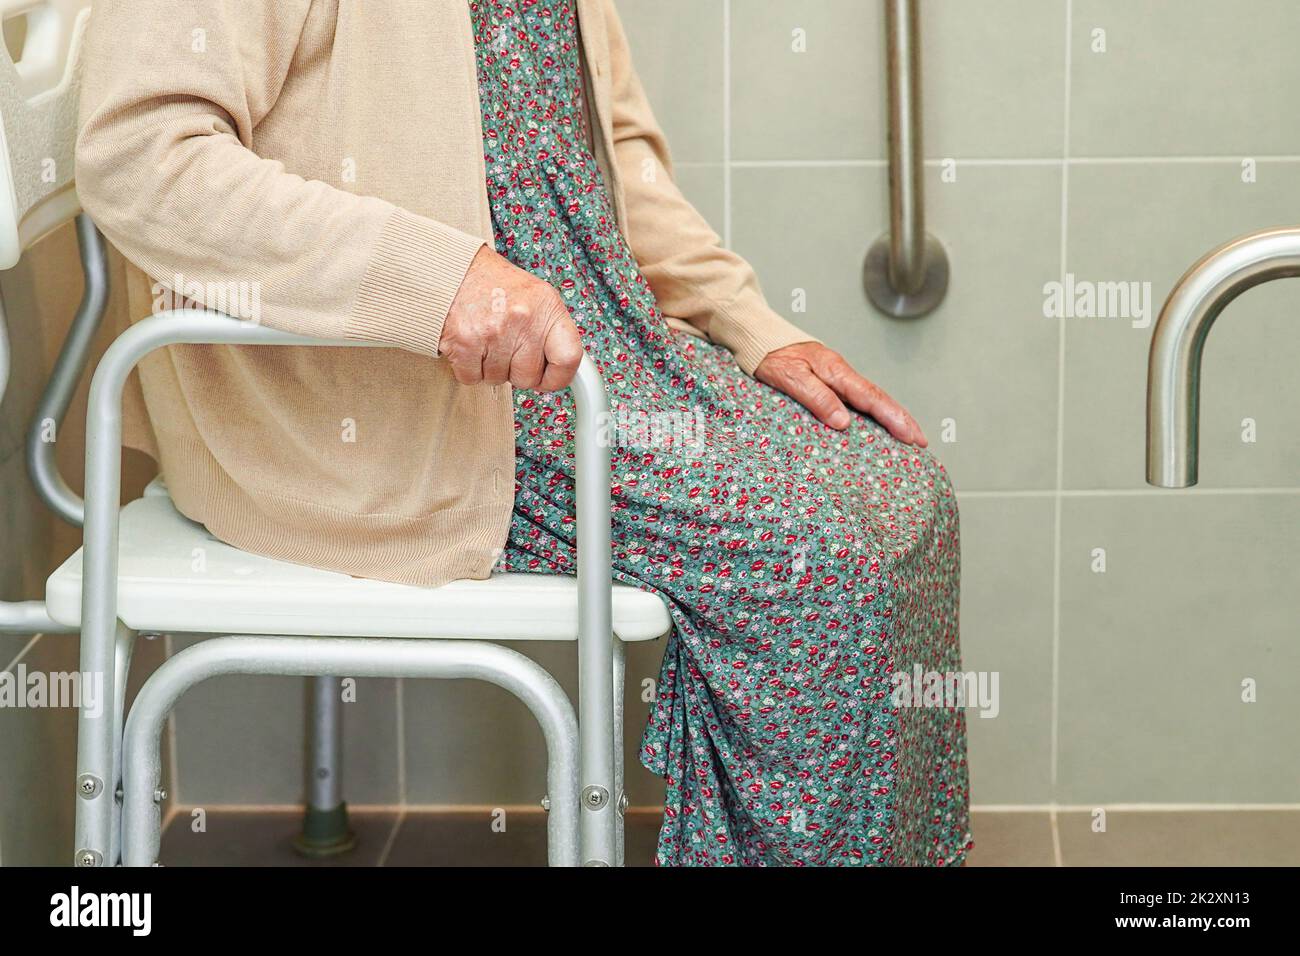 Anziana asiatica paziente donna uso servizi igienici sostegno in bagno, corrimano di sicurezza barra di presa, sicurezza in ospedale di cura. Foto Stock